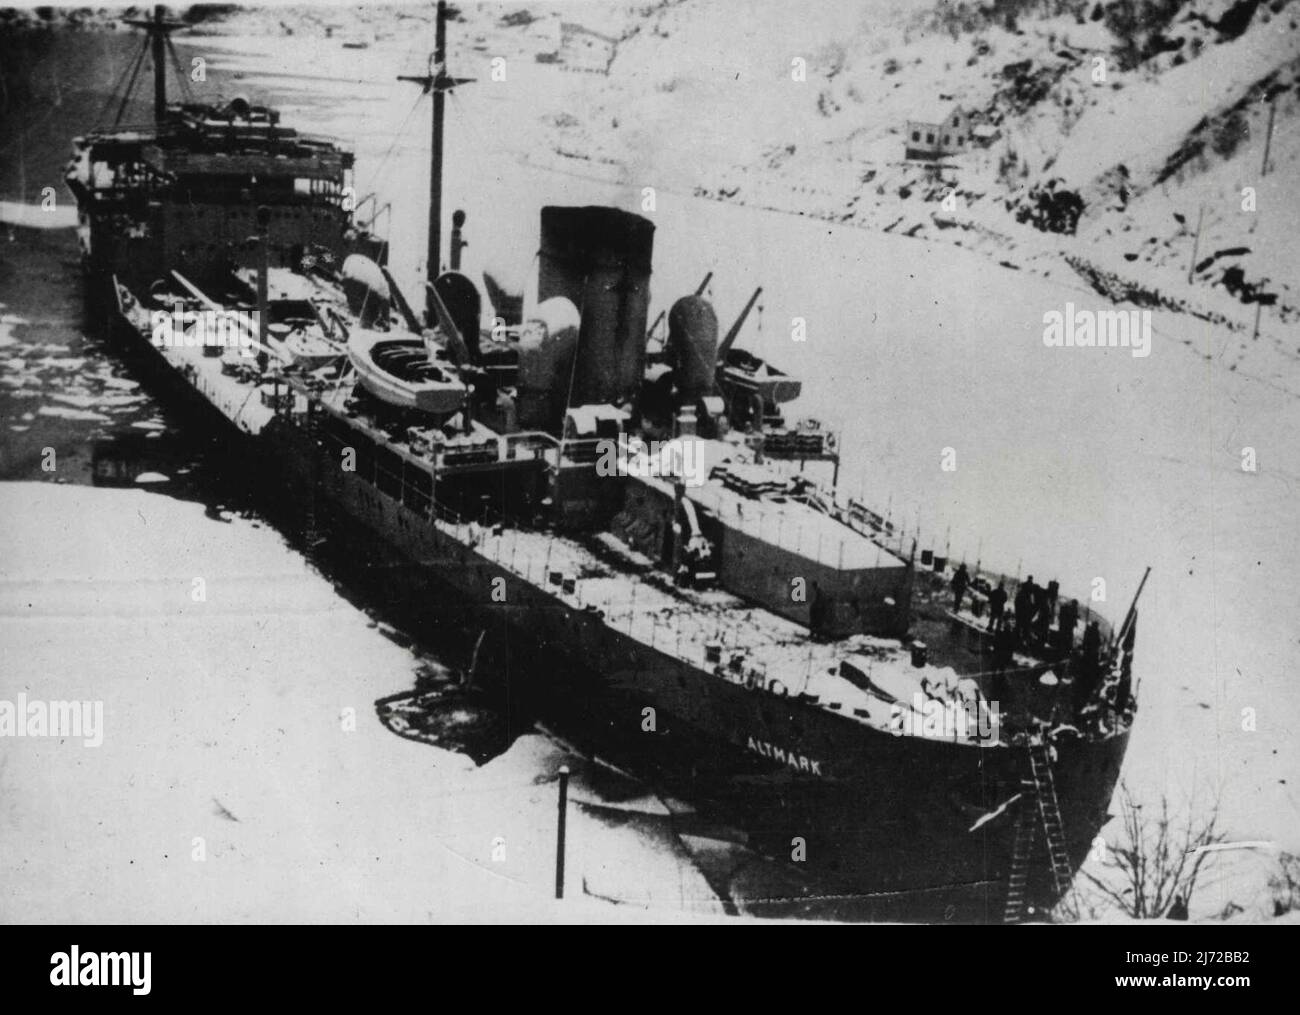 Il 'Altmark' nel fiordo norvegese - il 'Altmark' aground nel fiordo di Josing, Norvegia meridionale. Da Oslo è stato riferito che la nave-prigione nazista Altmark, dalla quale sono stati salvati 299 prigionieri britannici per azione di H.M.S. Cossack, è stato refloated a Josing Fjord, dove era andato aground. La Corte d'inchiesta marina norvegese sta tenendo un'indagine segreta sulla causa. Febbraio 24, 1940. Foto Stock